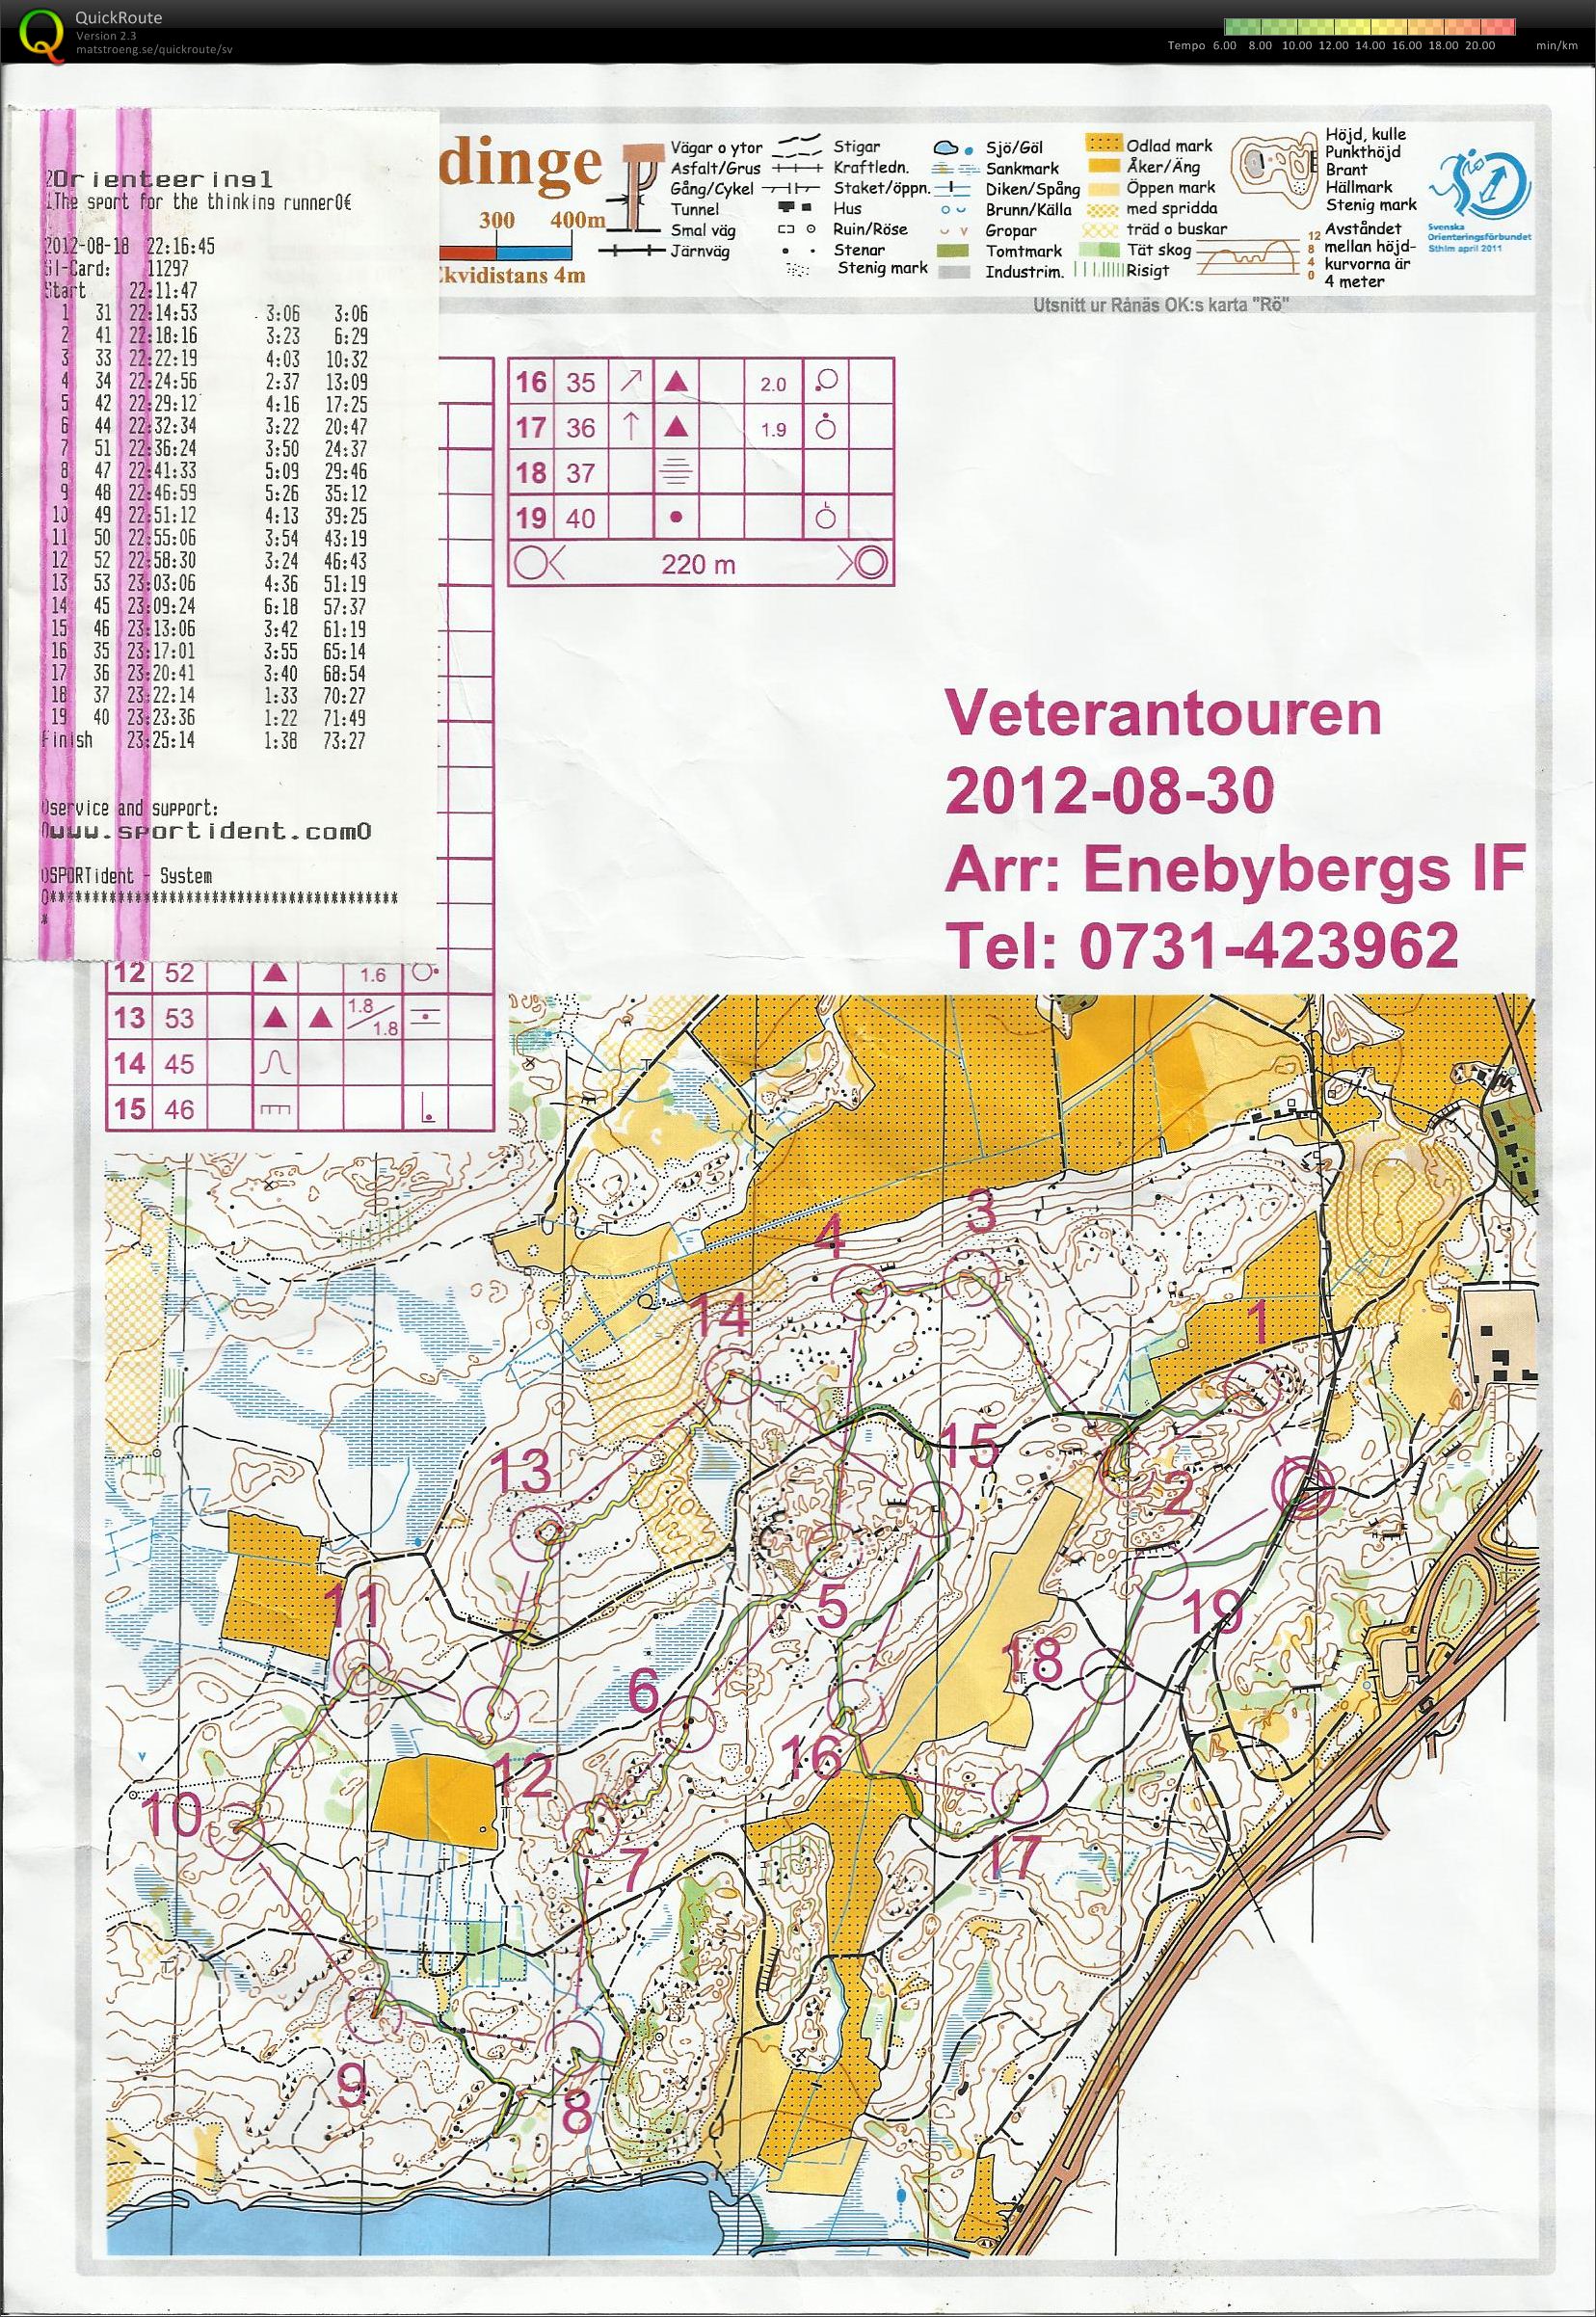 Veterantouren Enebyberg (2012-08-30)